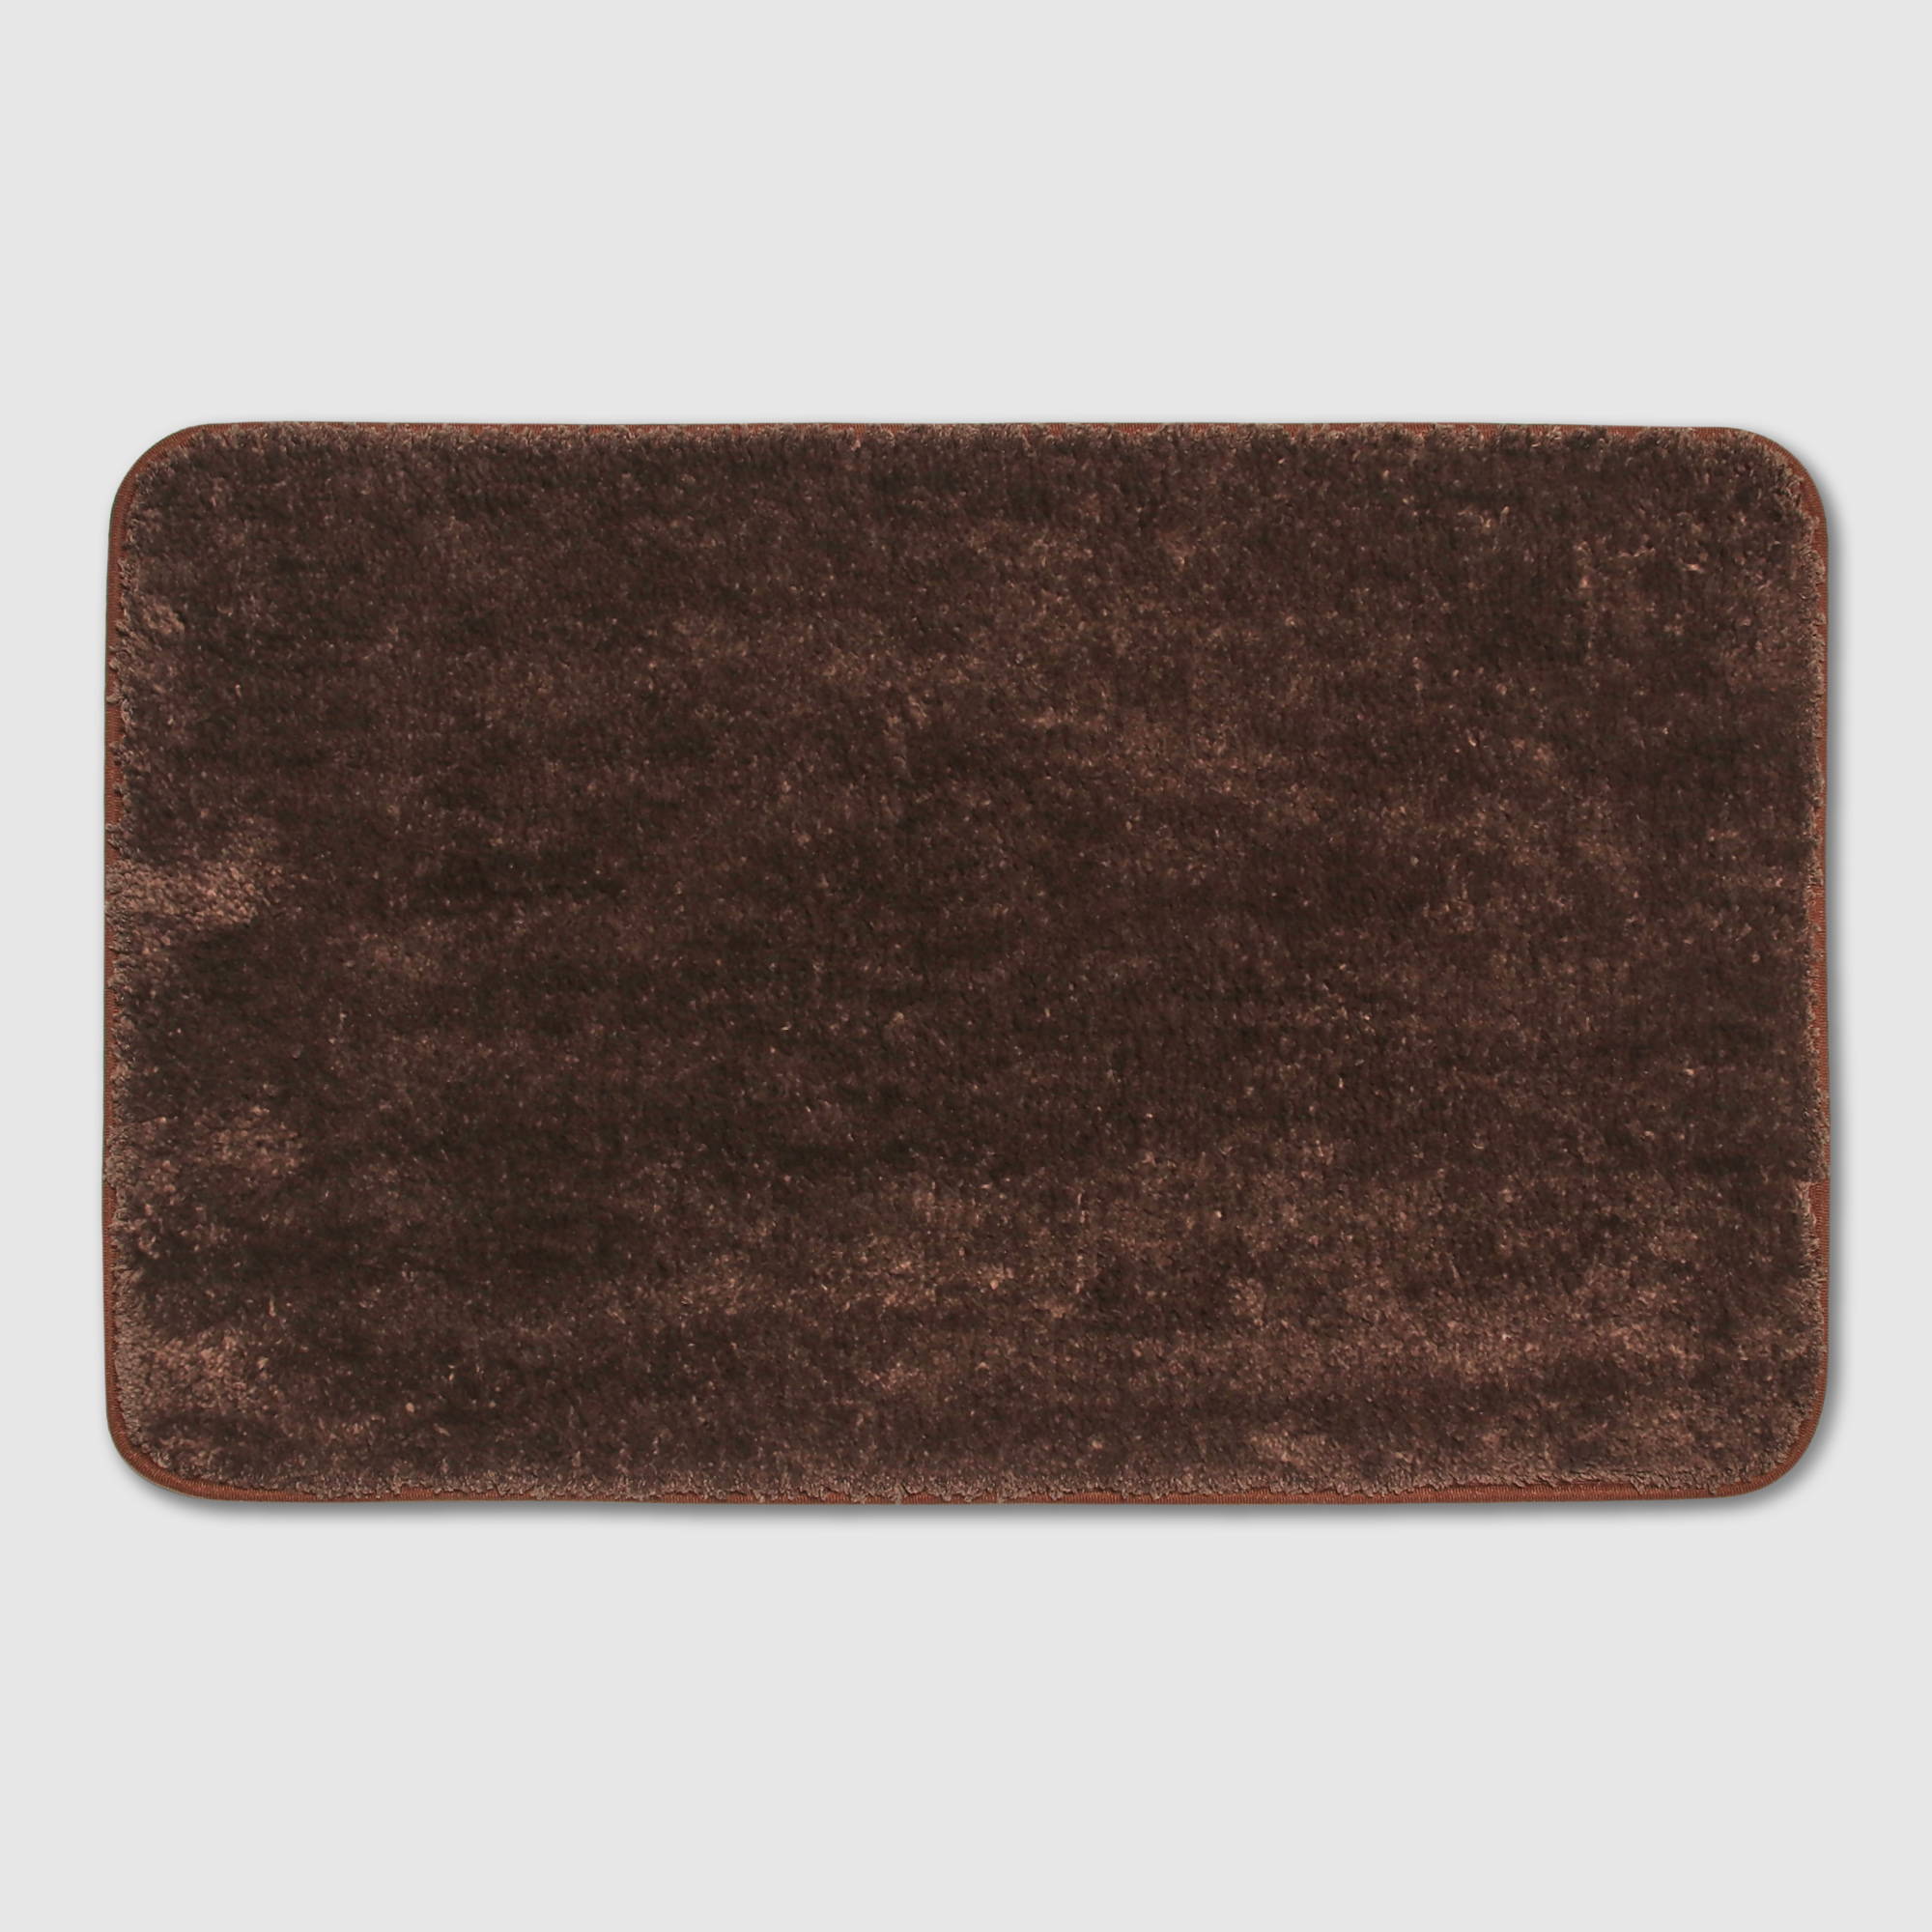 Коврик Silverstone Carpet коричневый 50х80 см коврик придверный x y carpet хлопковый чёрно белый 60х90 см